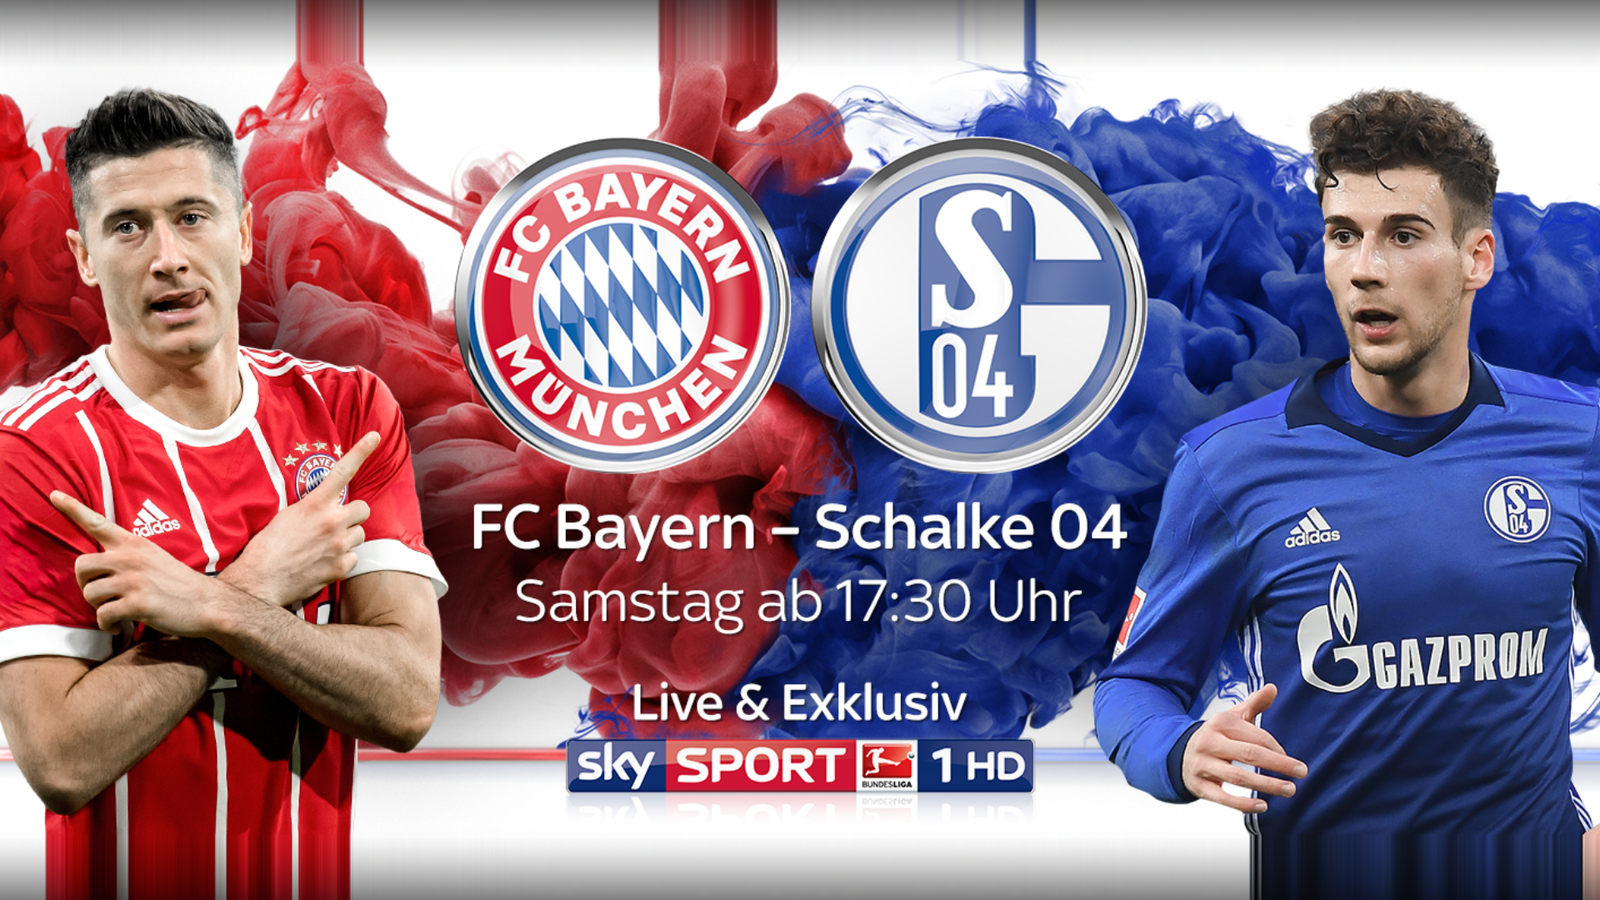 FC Bayern München gegen FC Schalke 04